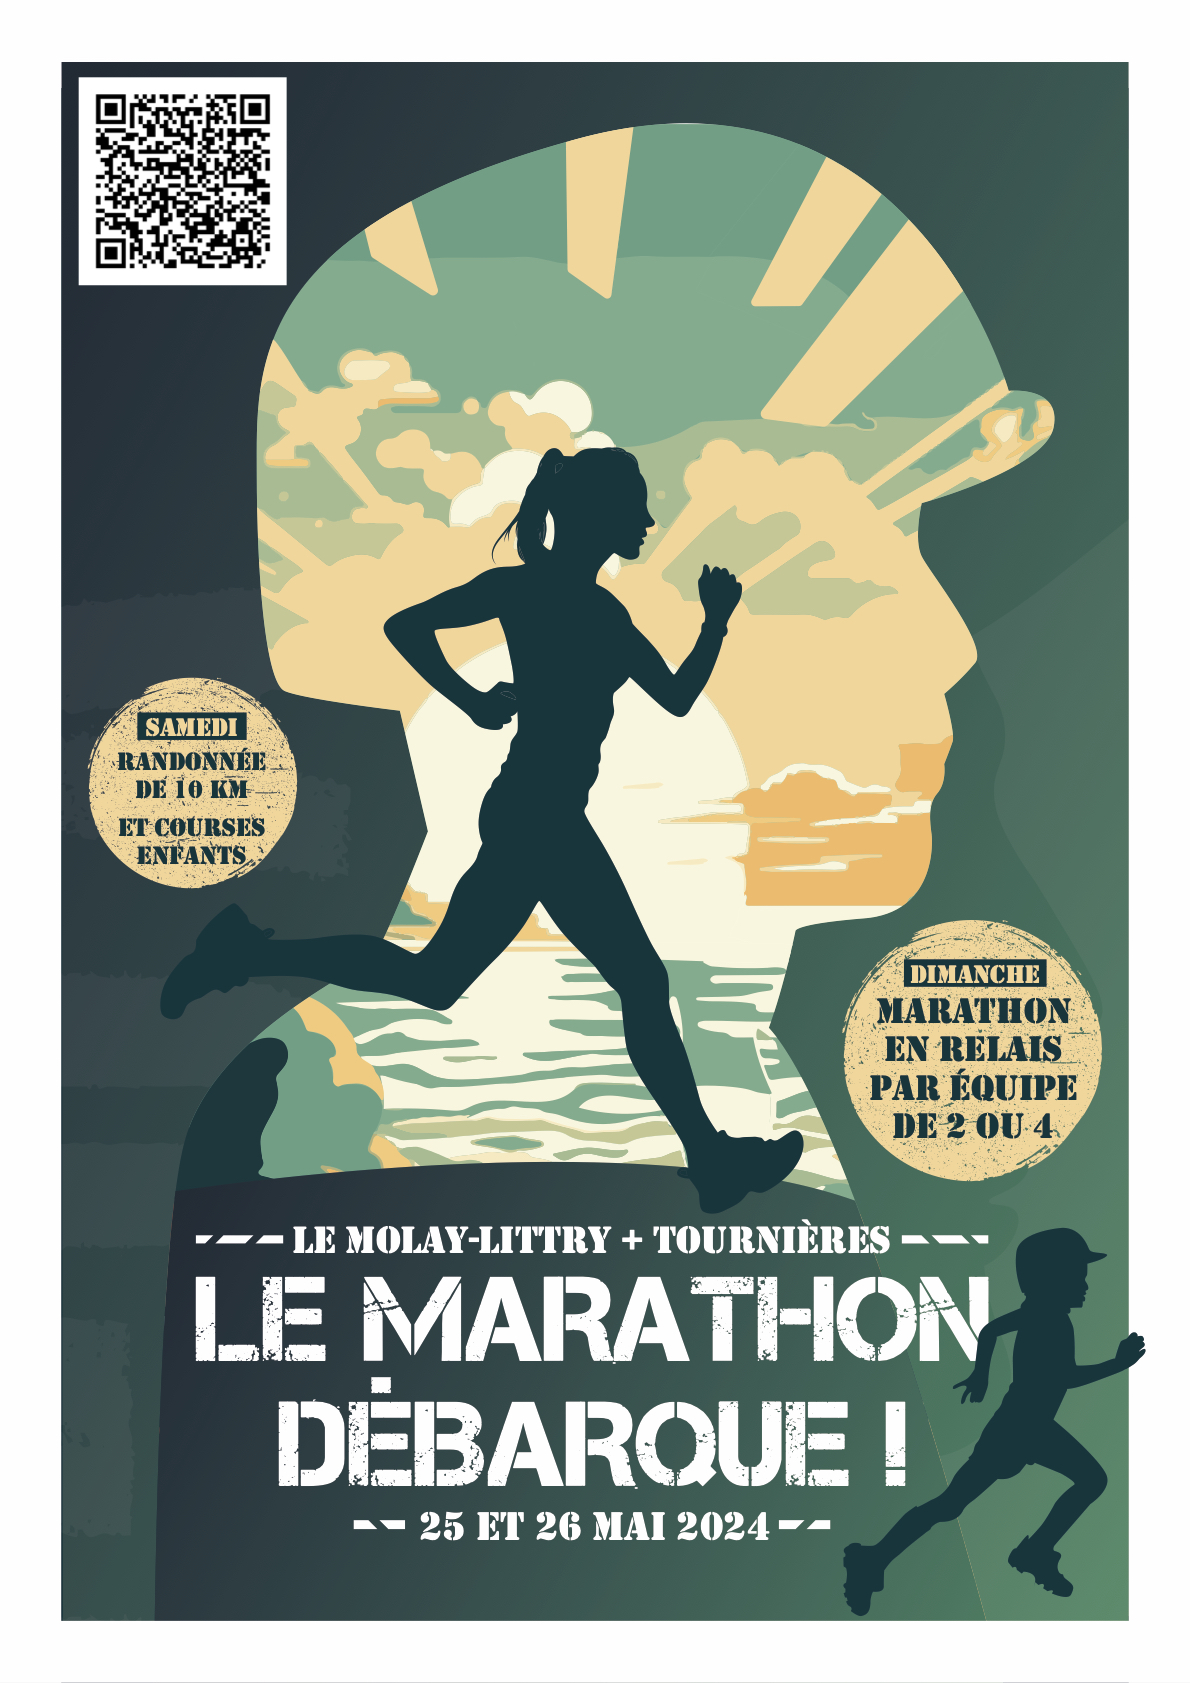 Le Marathon débarque ! null France null null null null